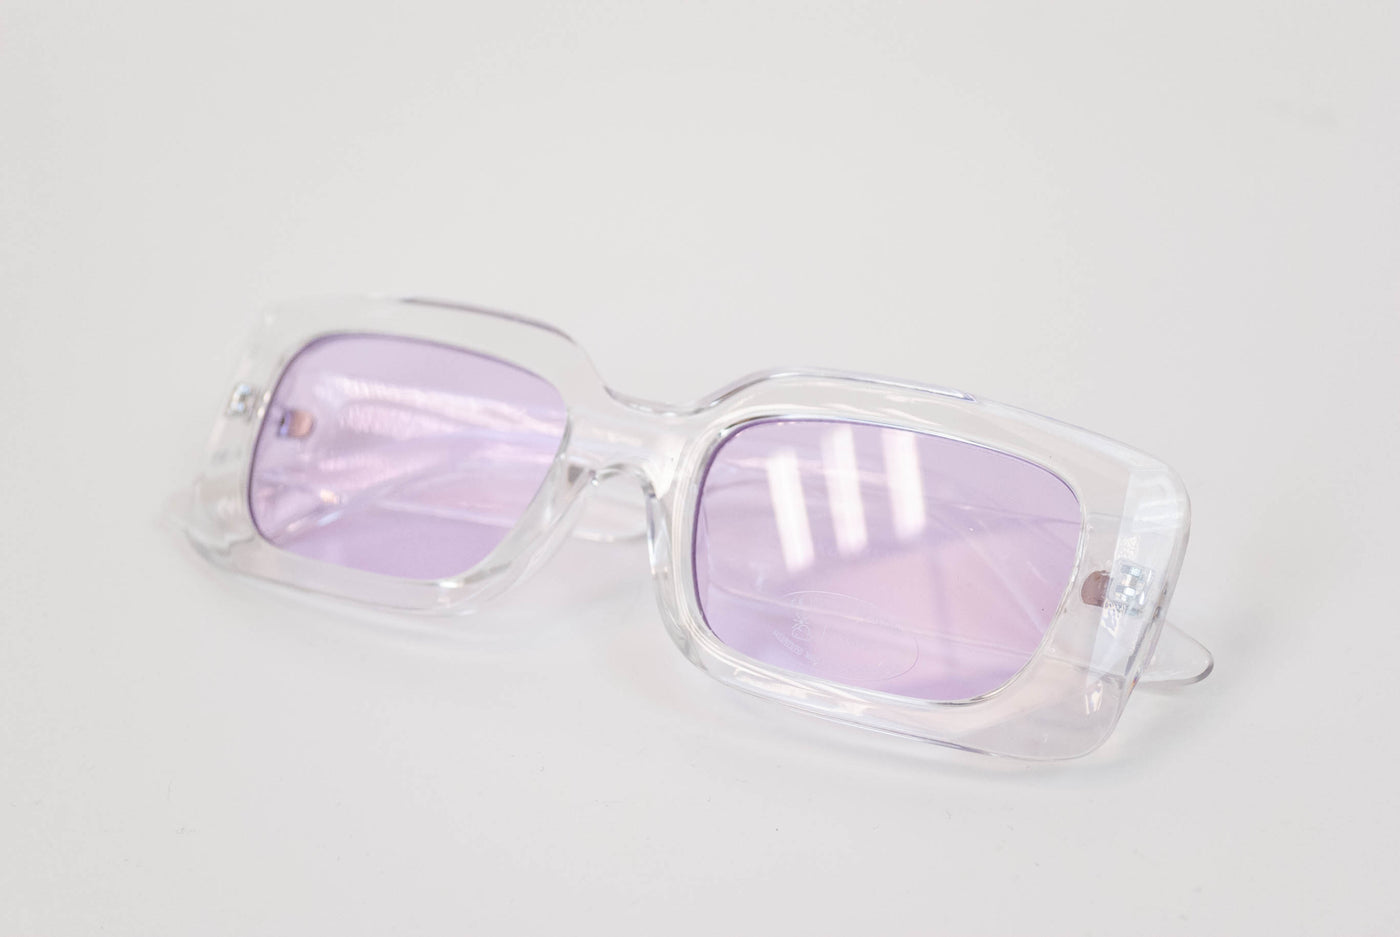 Gafas con lentes moradas y pasta transparente